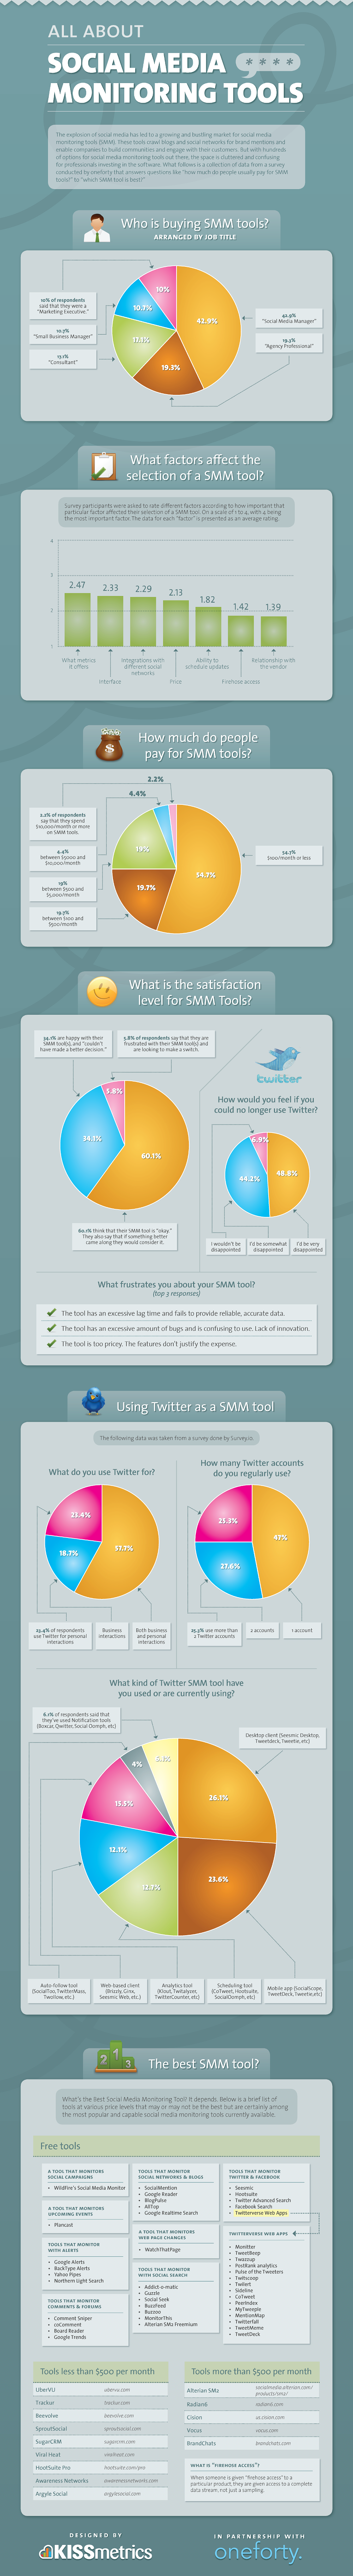 Social media monitoring survey